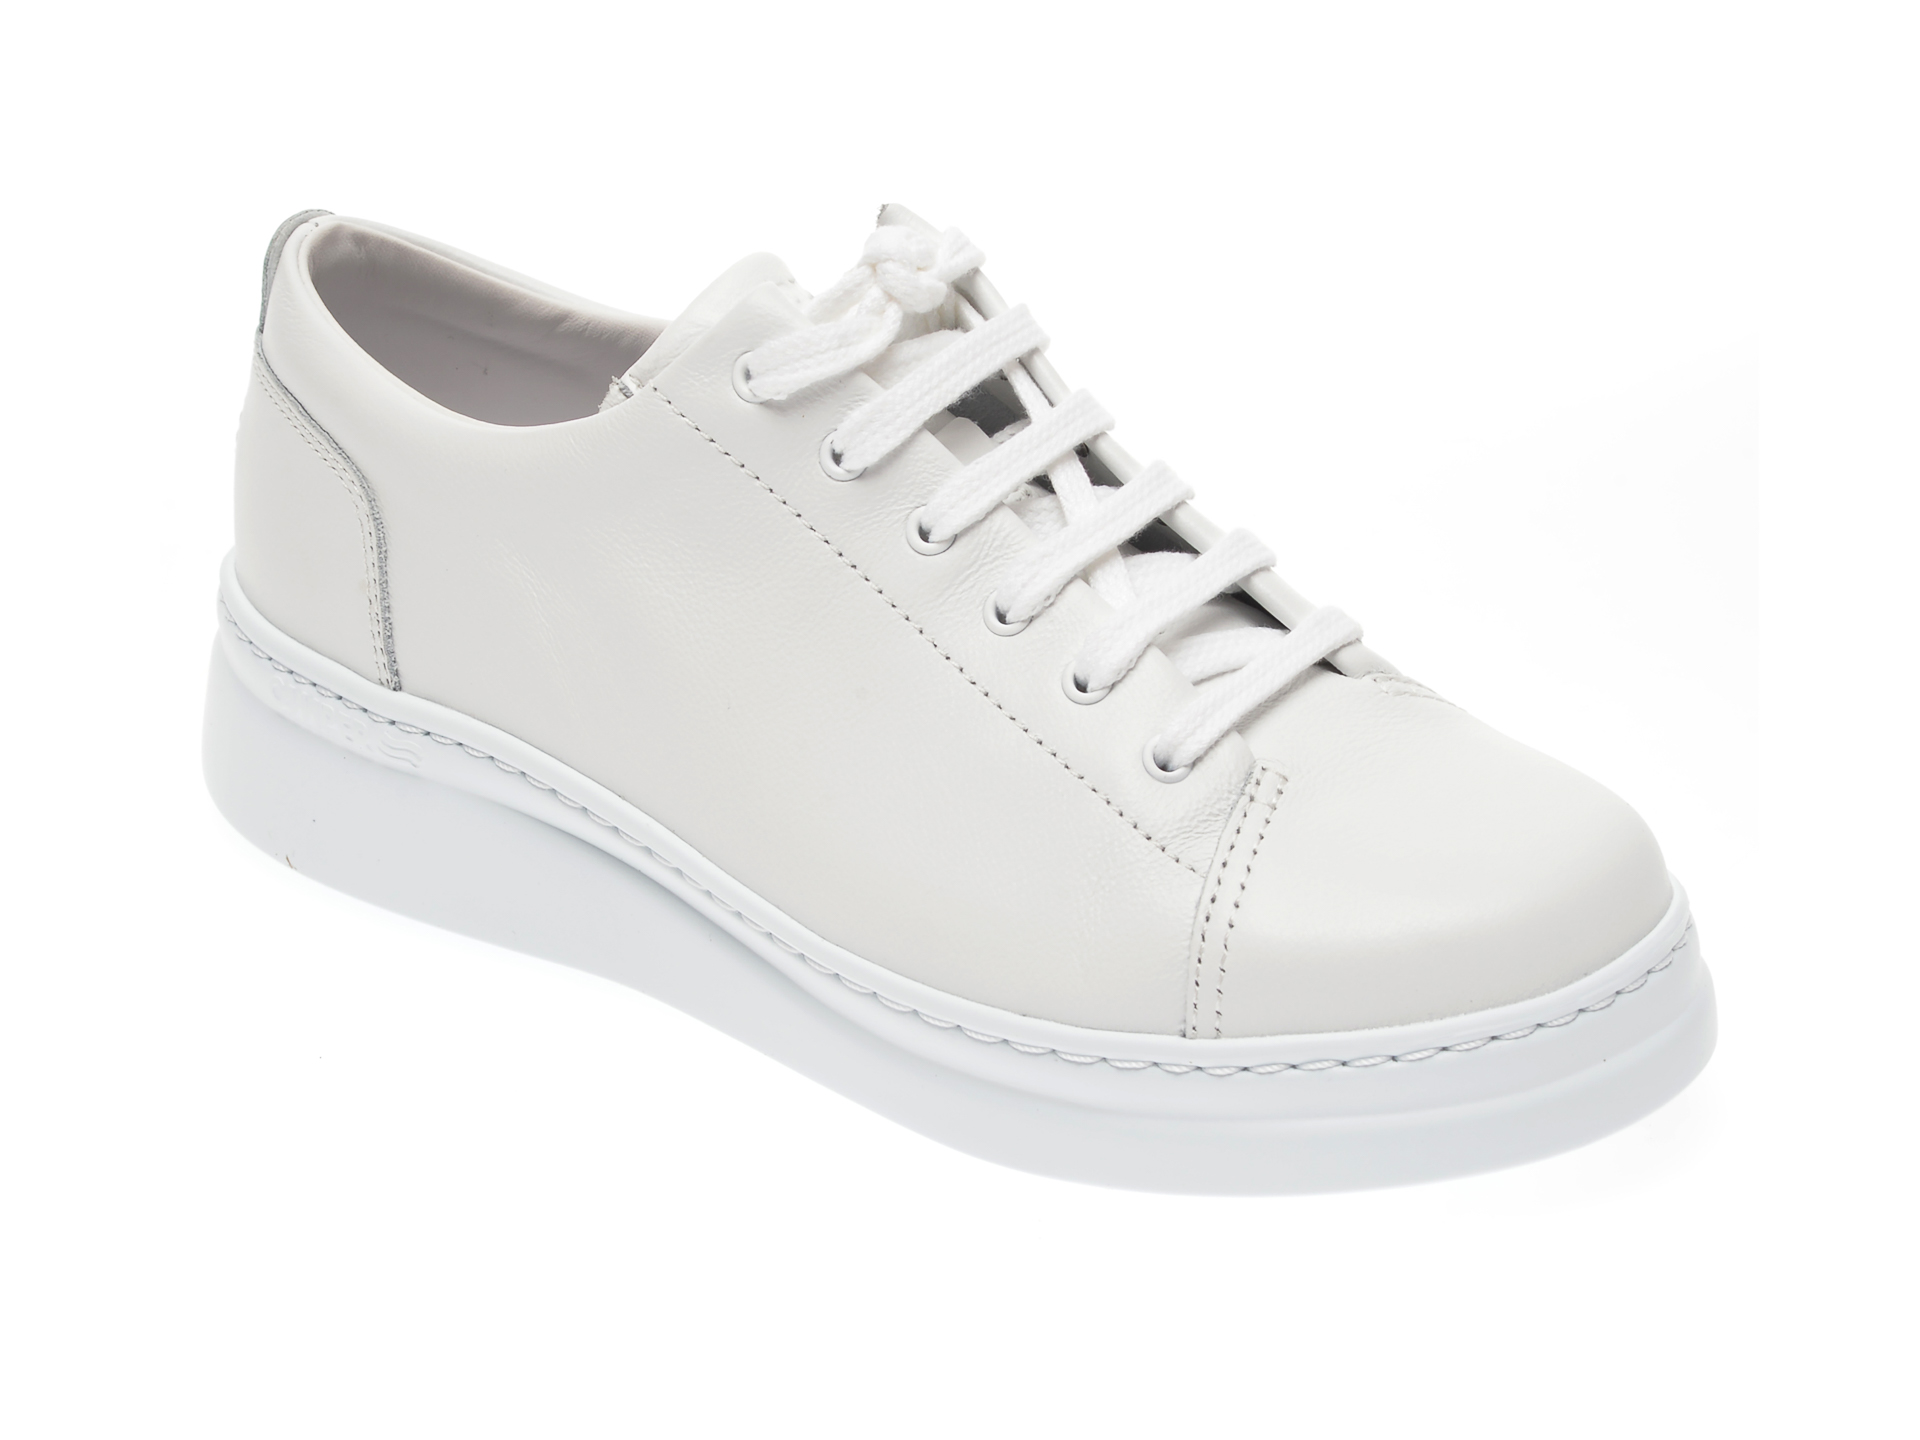 Pantofi CAMPER albi, K200508, din piele naturala Camper